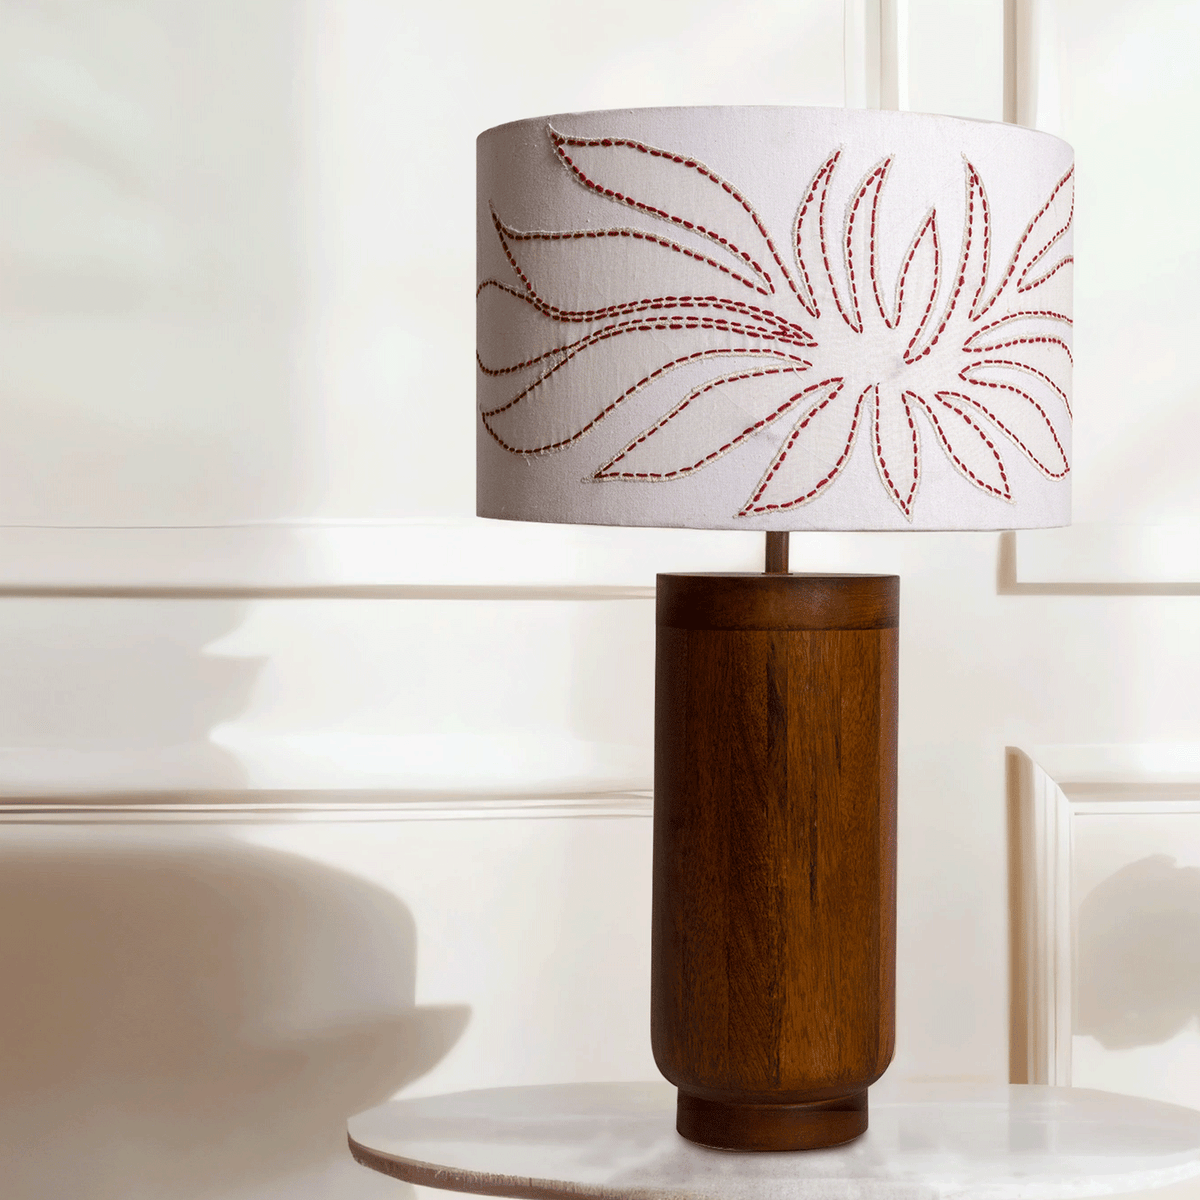 Gesu Table Lamp with applique shade